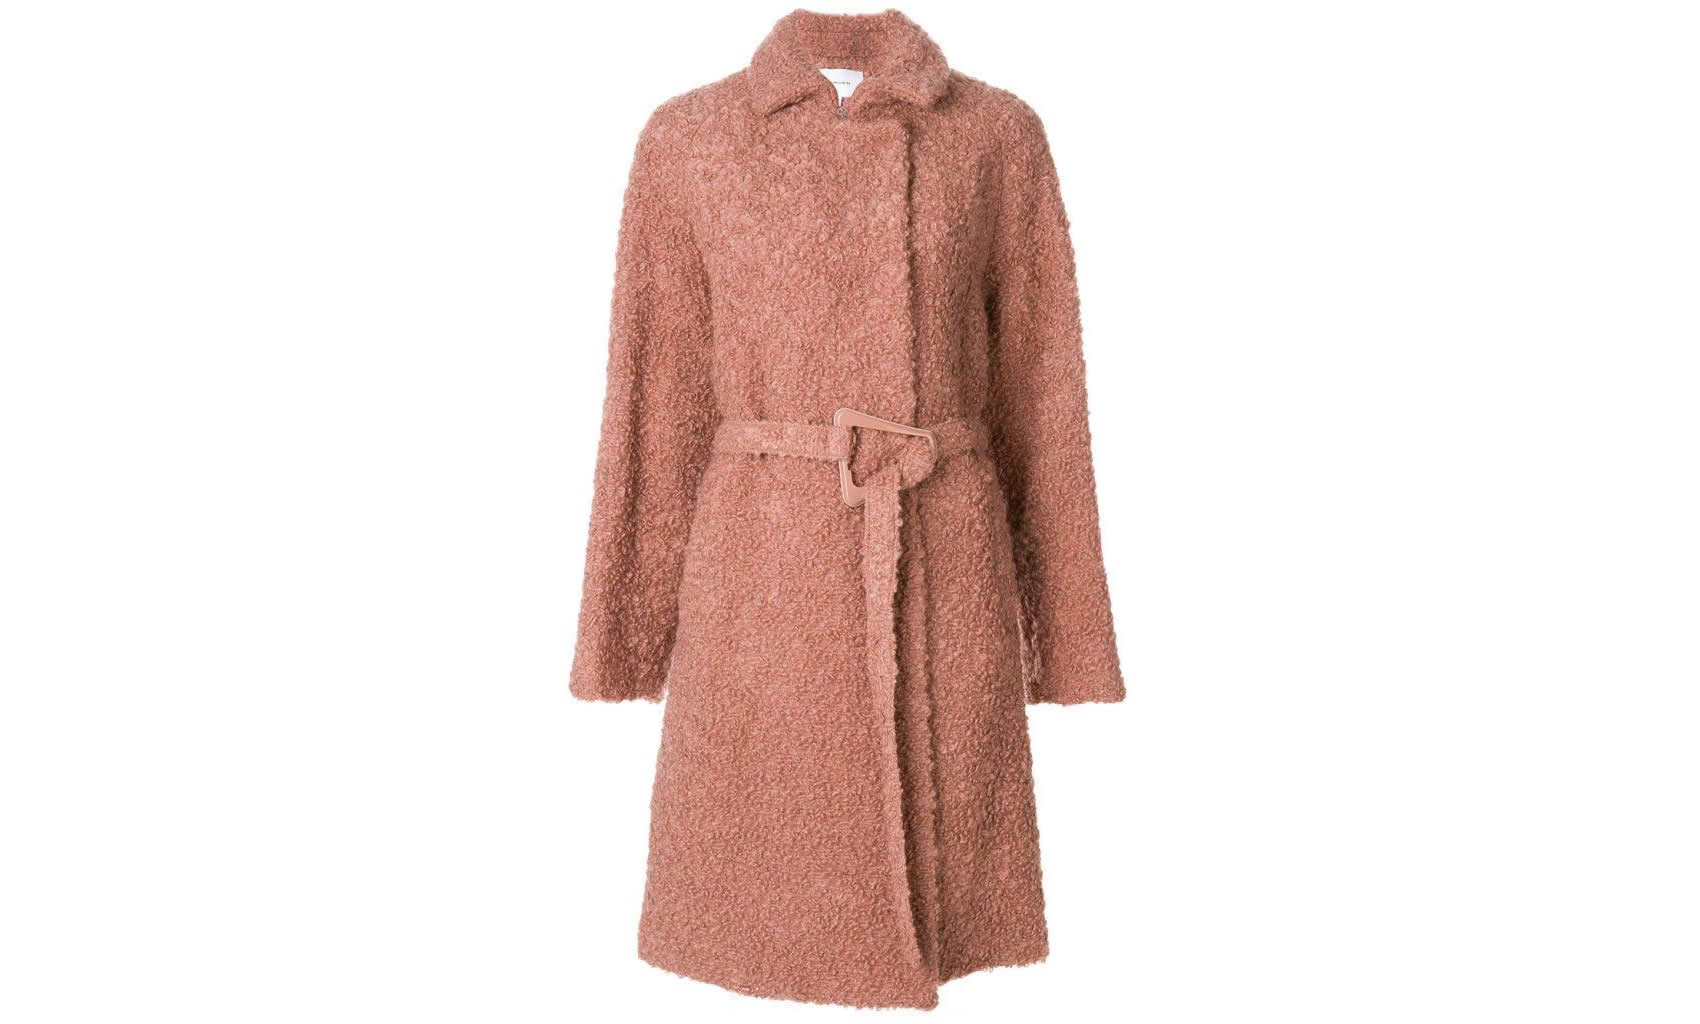 Carven cappotto vestaglia inverno 2018